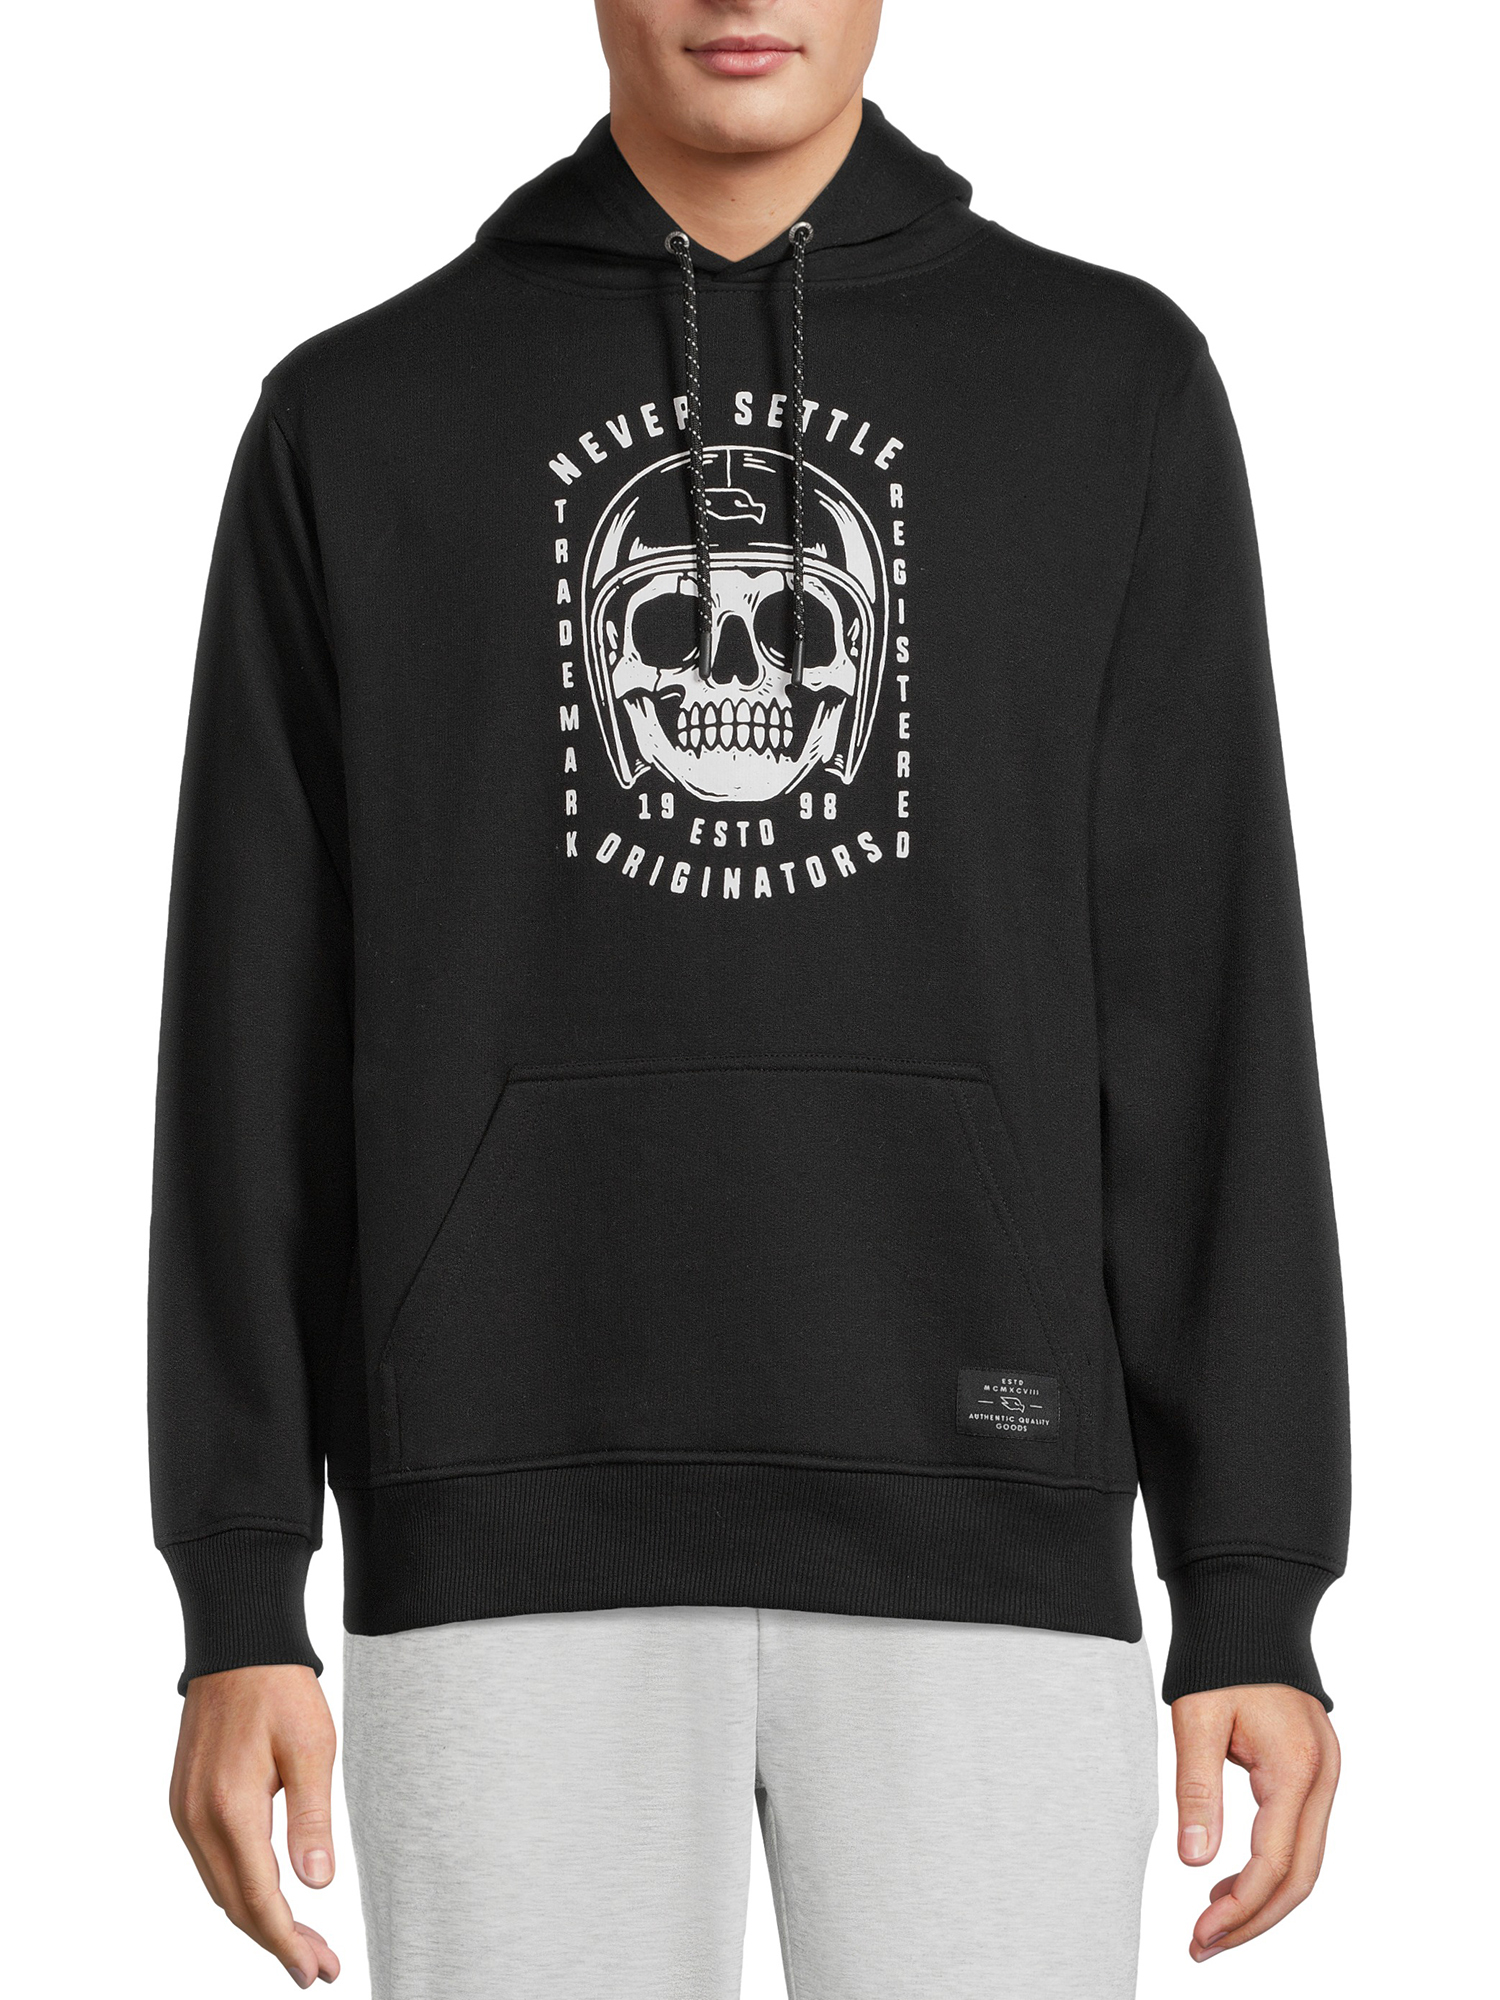 Tony Hawk Men's Skull Logo Pullover Fleece Hoodie Sweatshirt, Sizes S-XL - image 1 of 6